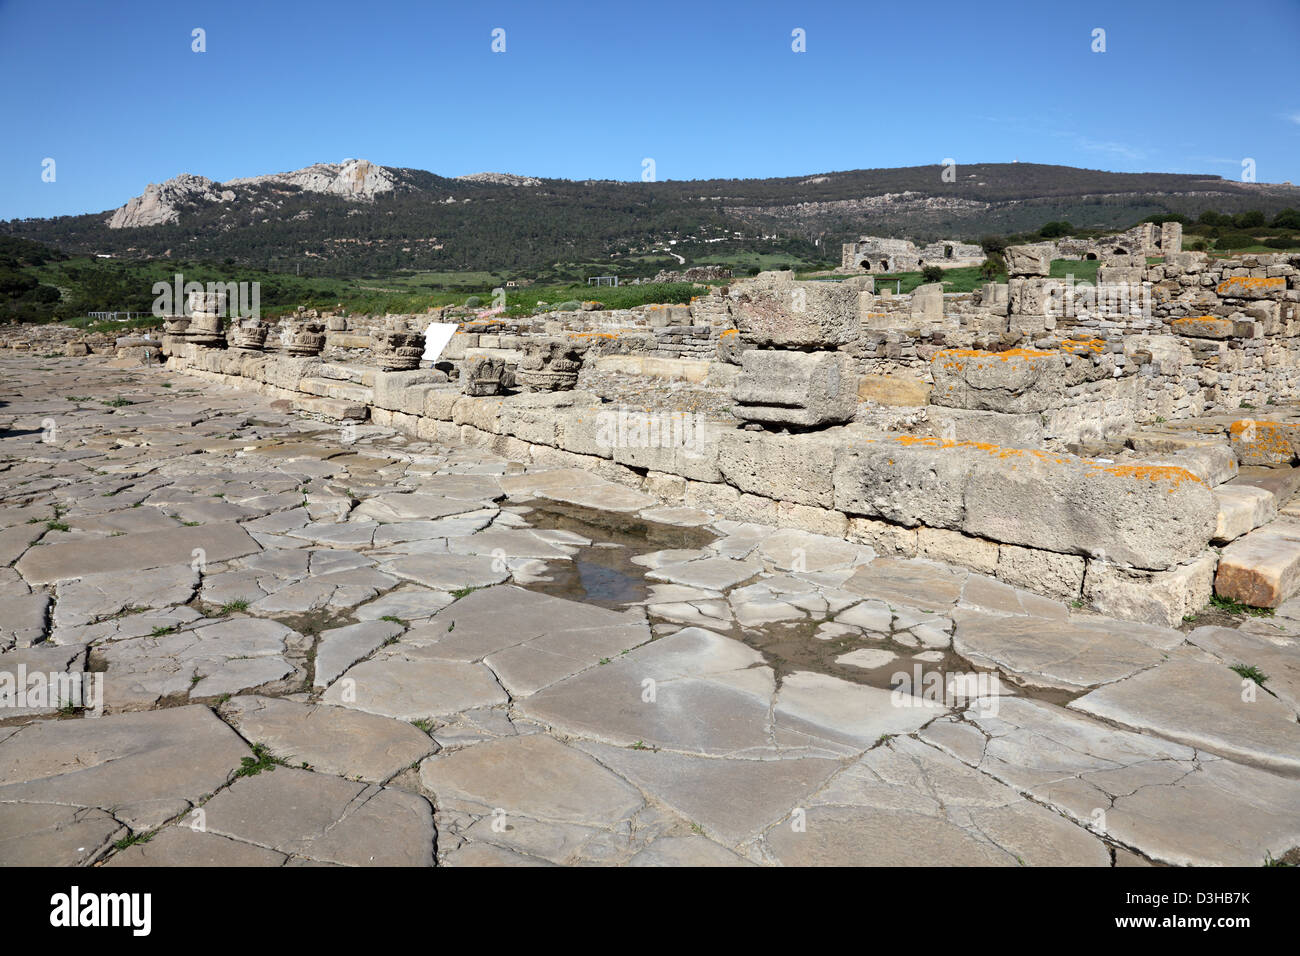 Ruines de la ville romaine Baleo Claudia en Andalousie, sud de l'Espagne Banque D'Images